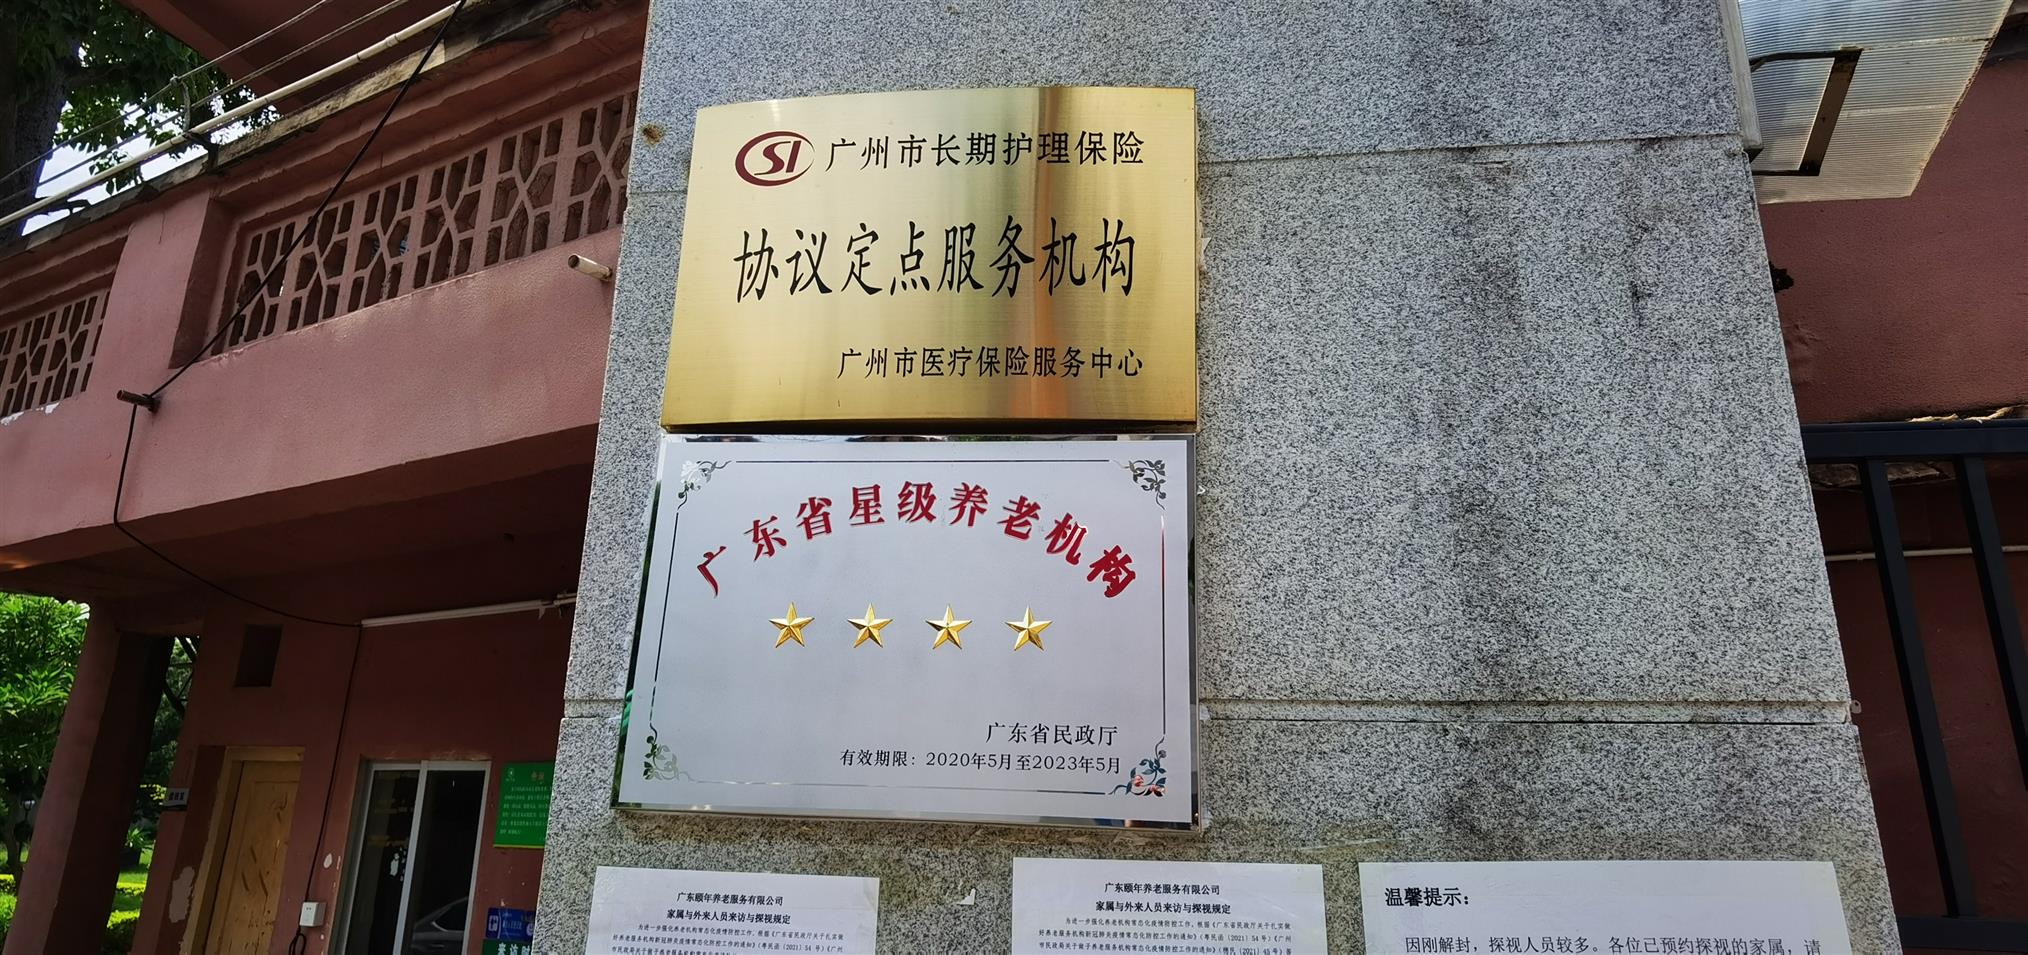 广州从化区老年康复中心联系电话